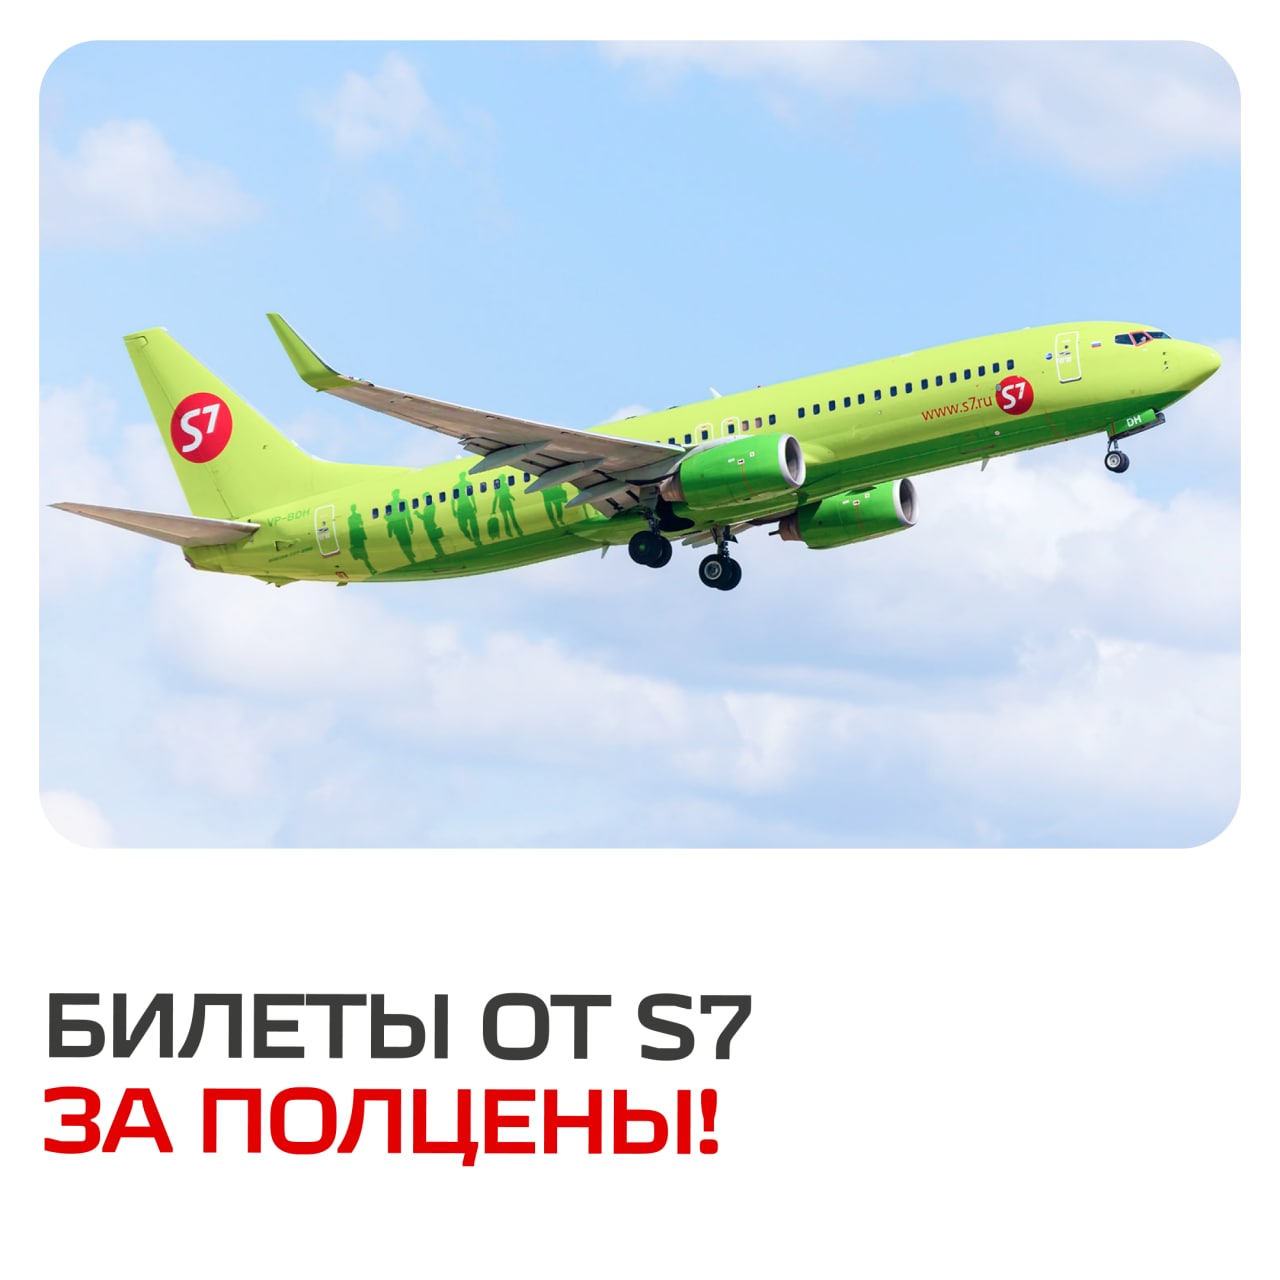 Акция от «S7 Airlines»!